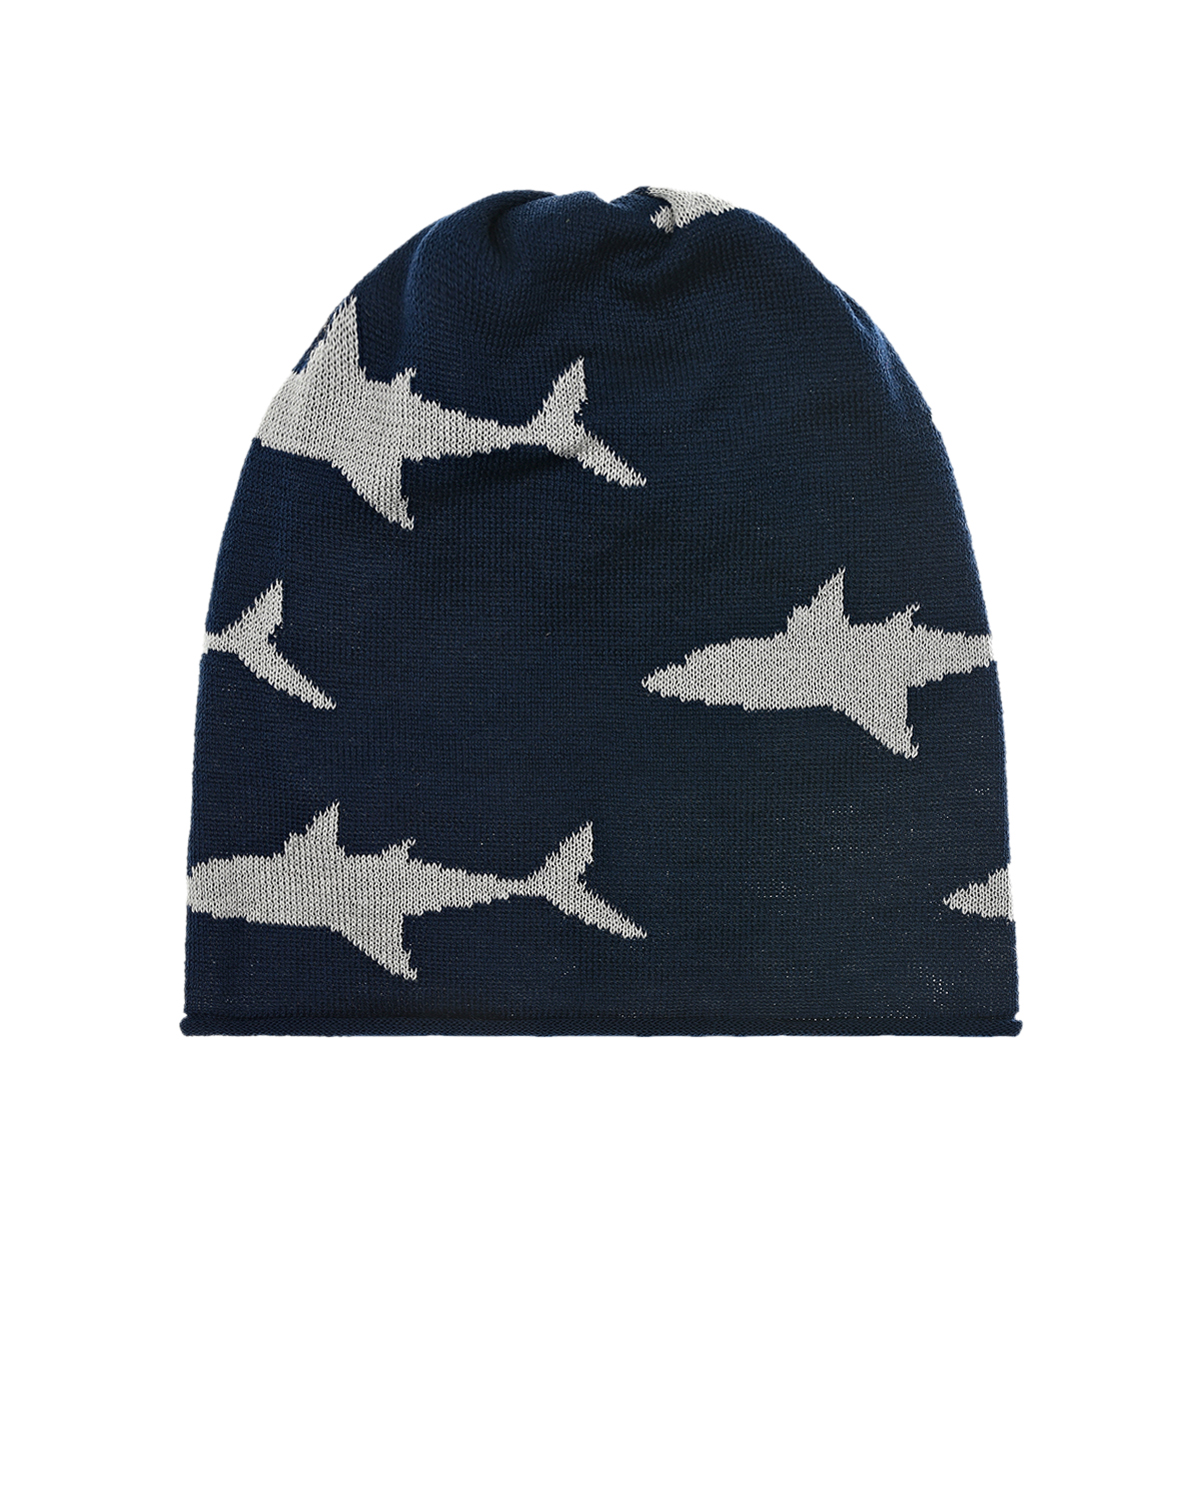 Синяя шапка с принтом "Акулы" Catya детская, размер 51, цвет синий - фото 1